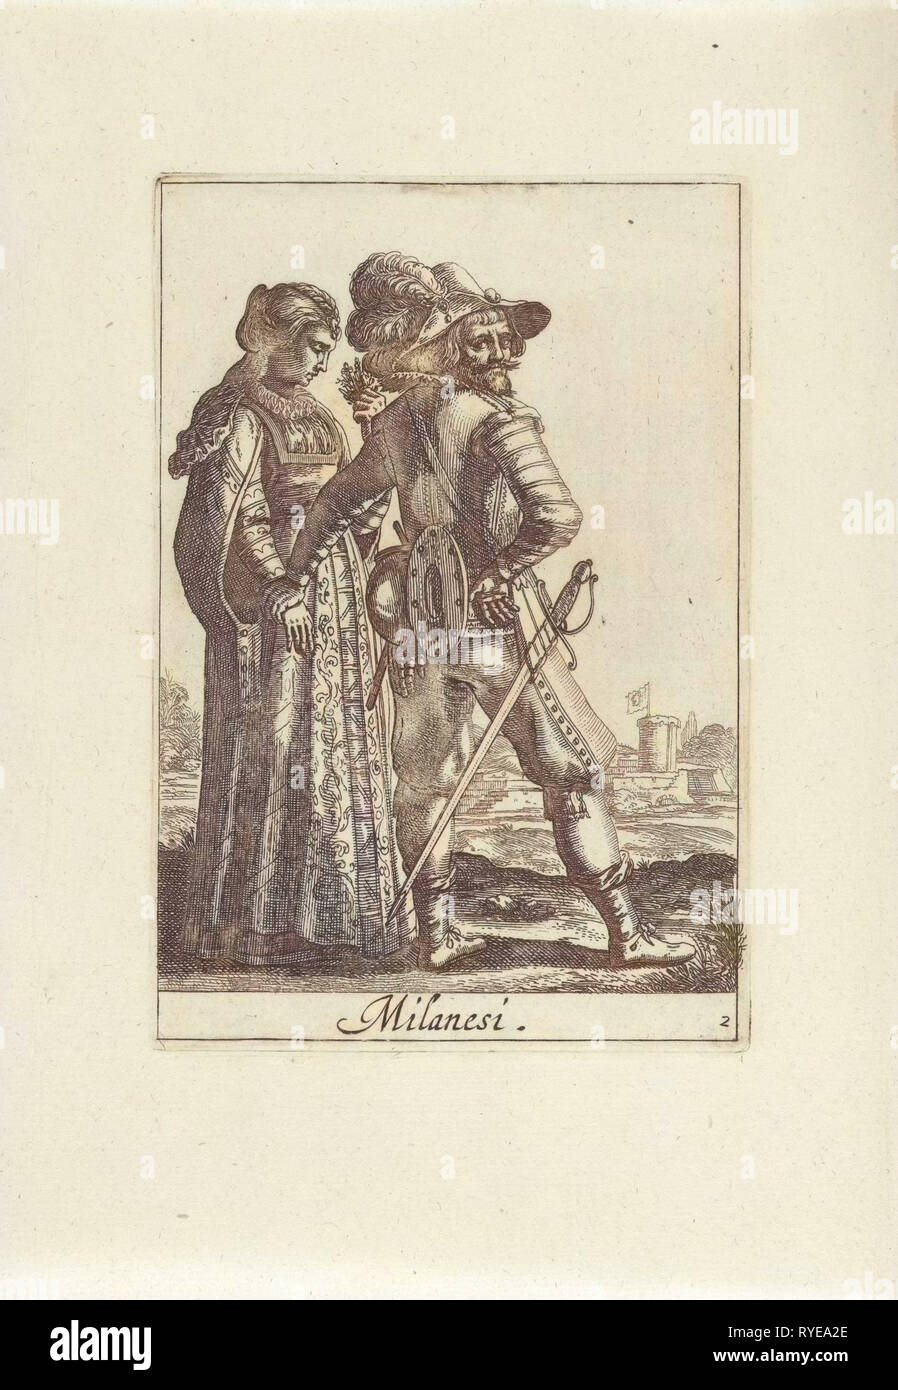 Giovane vestito alla moda milanese, Pieter Lastman, anonimo, Johannes conciliaboli e Cornelis Mortier, 1720 - 1772 Foto Stock